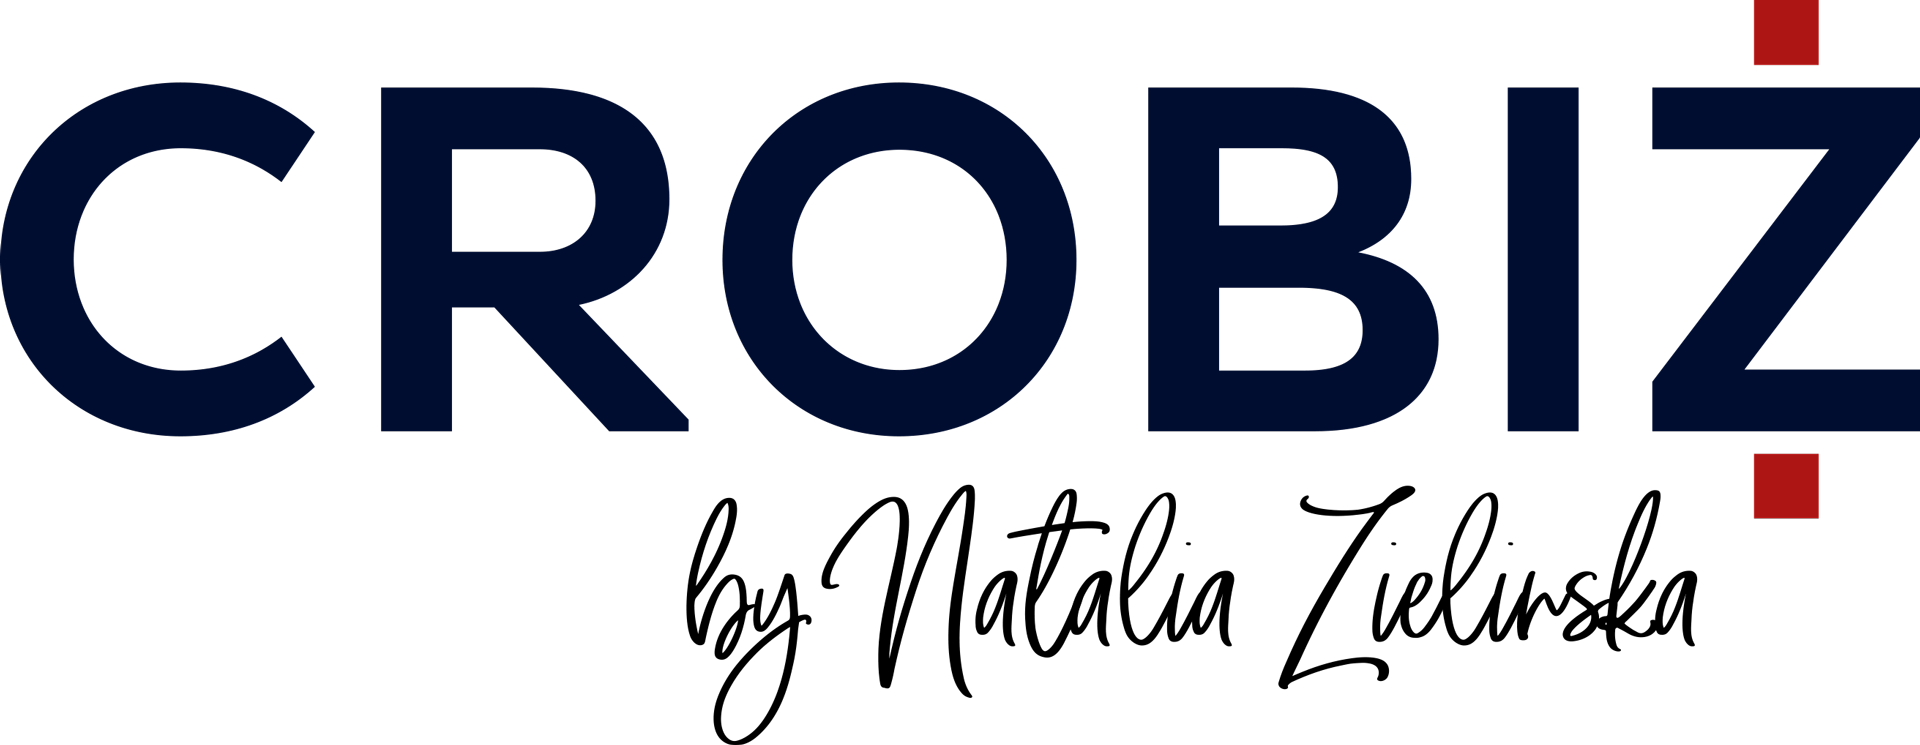 CROBIZ by Natalia Zielinska logo